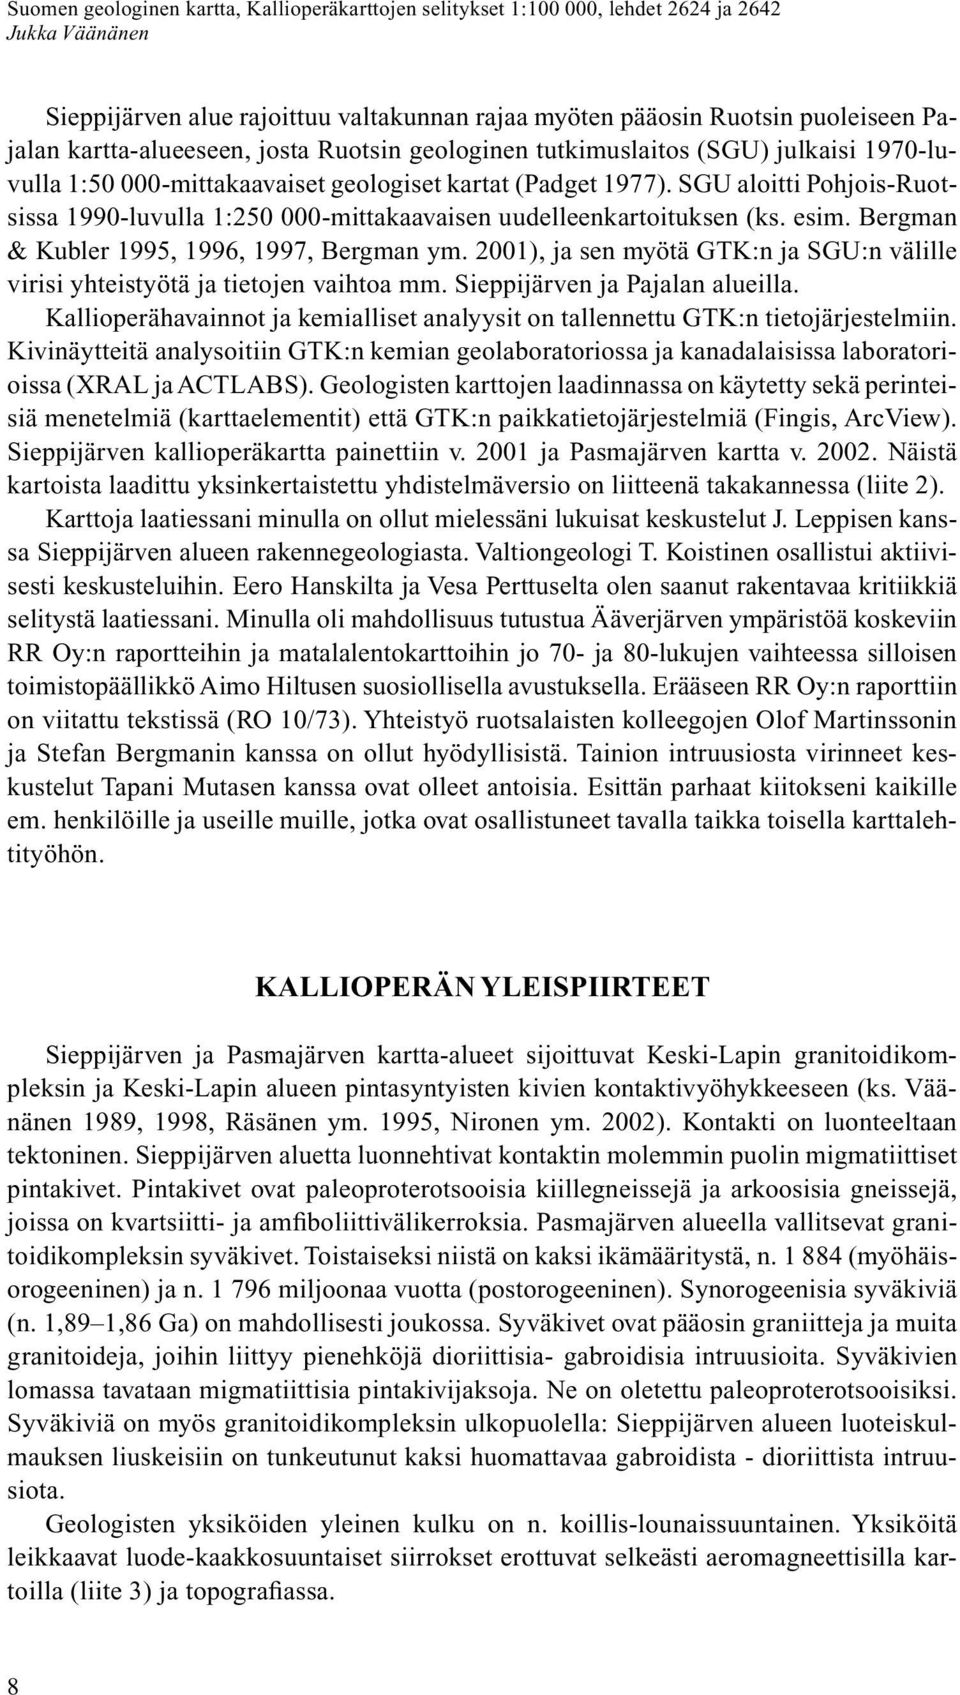 2001), ja sen myötä GTK:n ja SGU:n välille virisi yhteistyötä ja tietojen vaihtoa mm. Sieppijärven ja Pajalan alueilla.